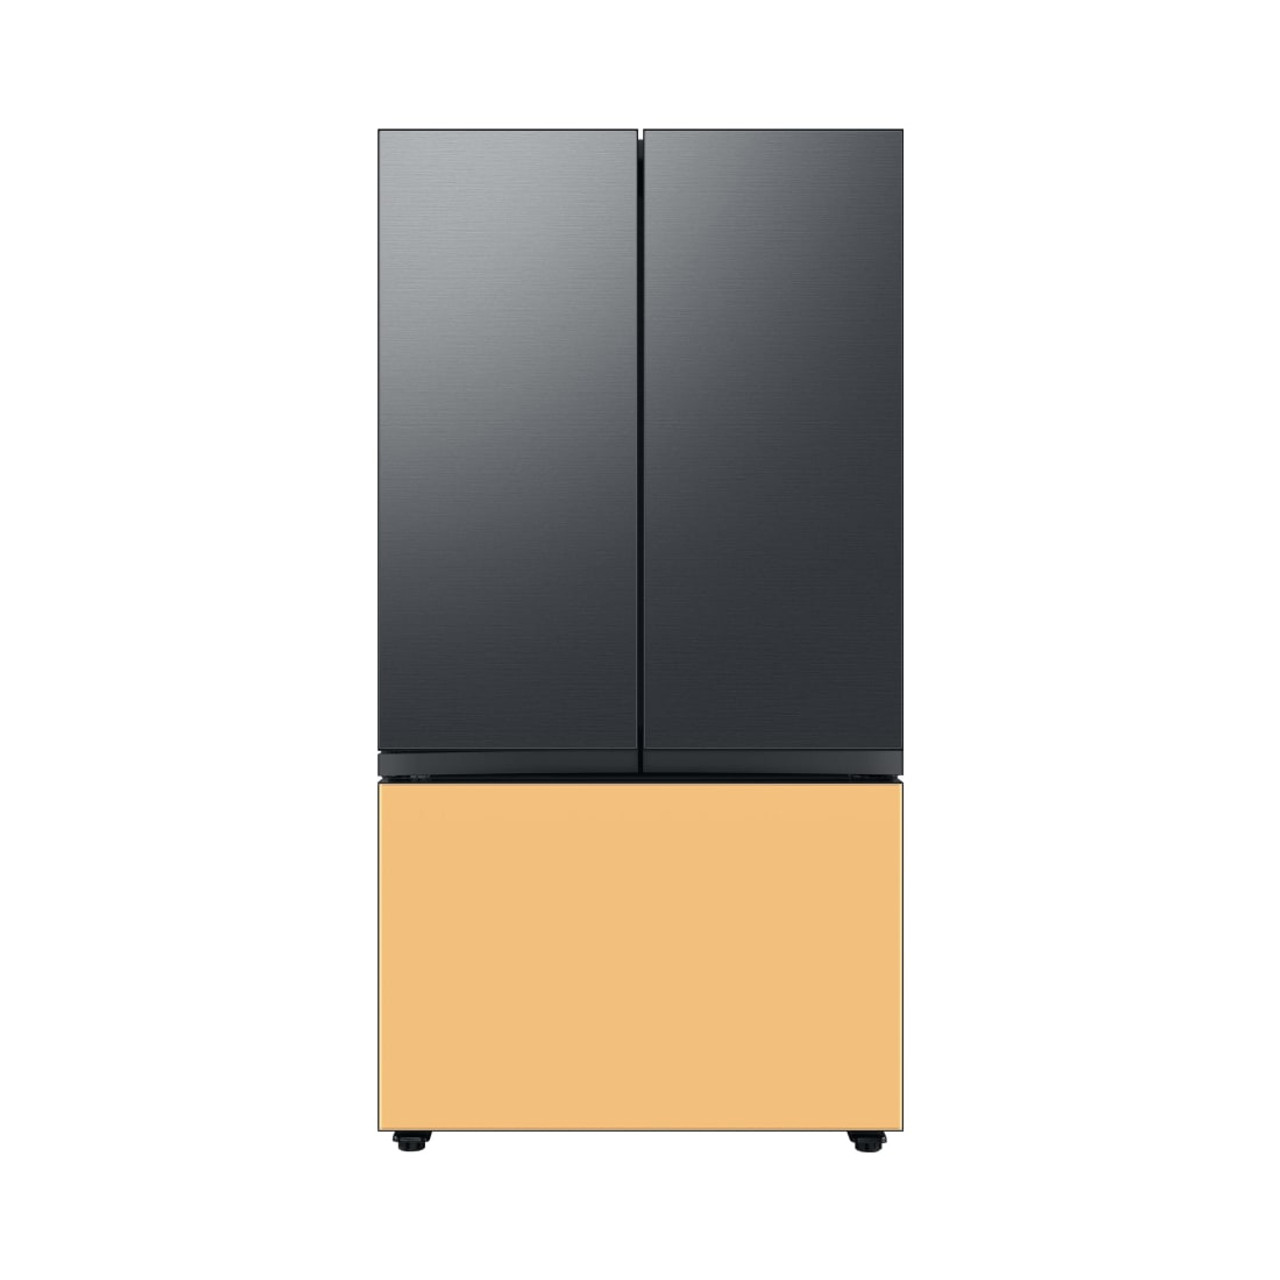 Samsung BESPOKE 3-Door French Door Top Panel  in Matte Black Steel